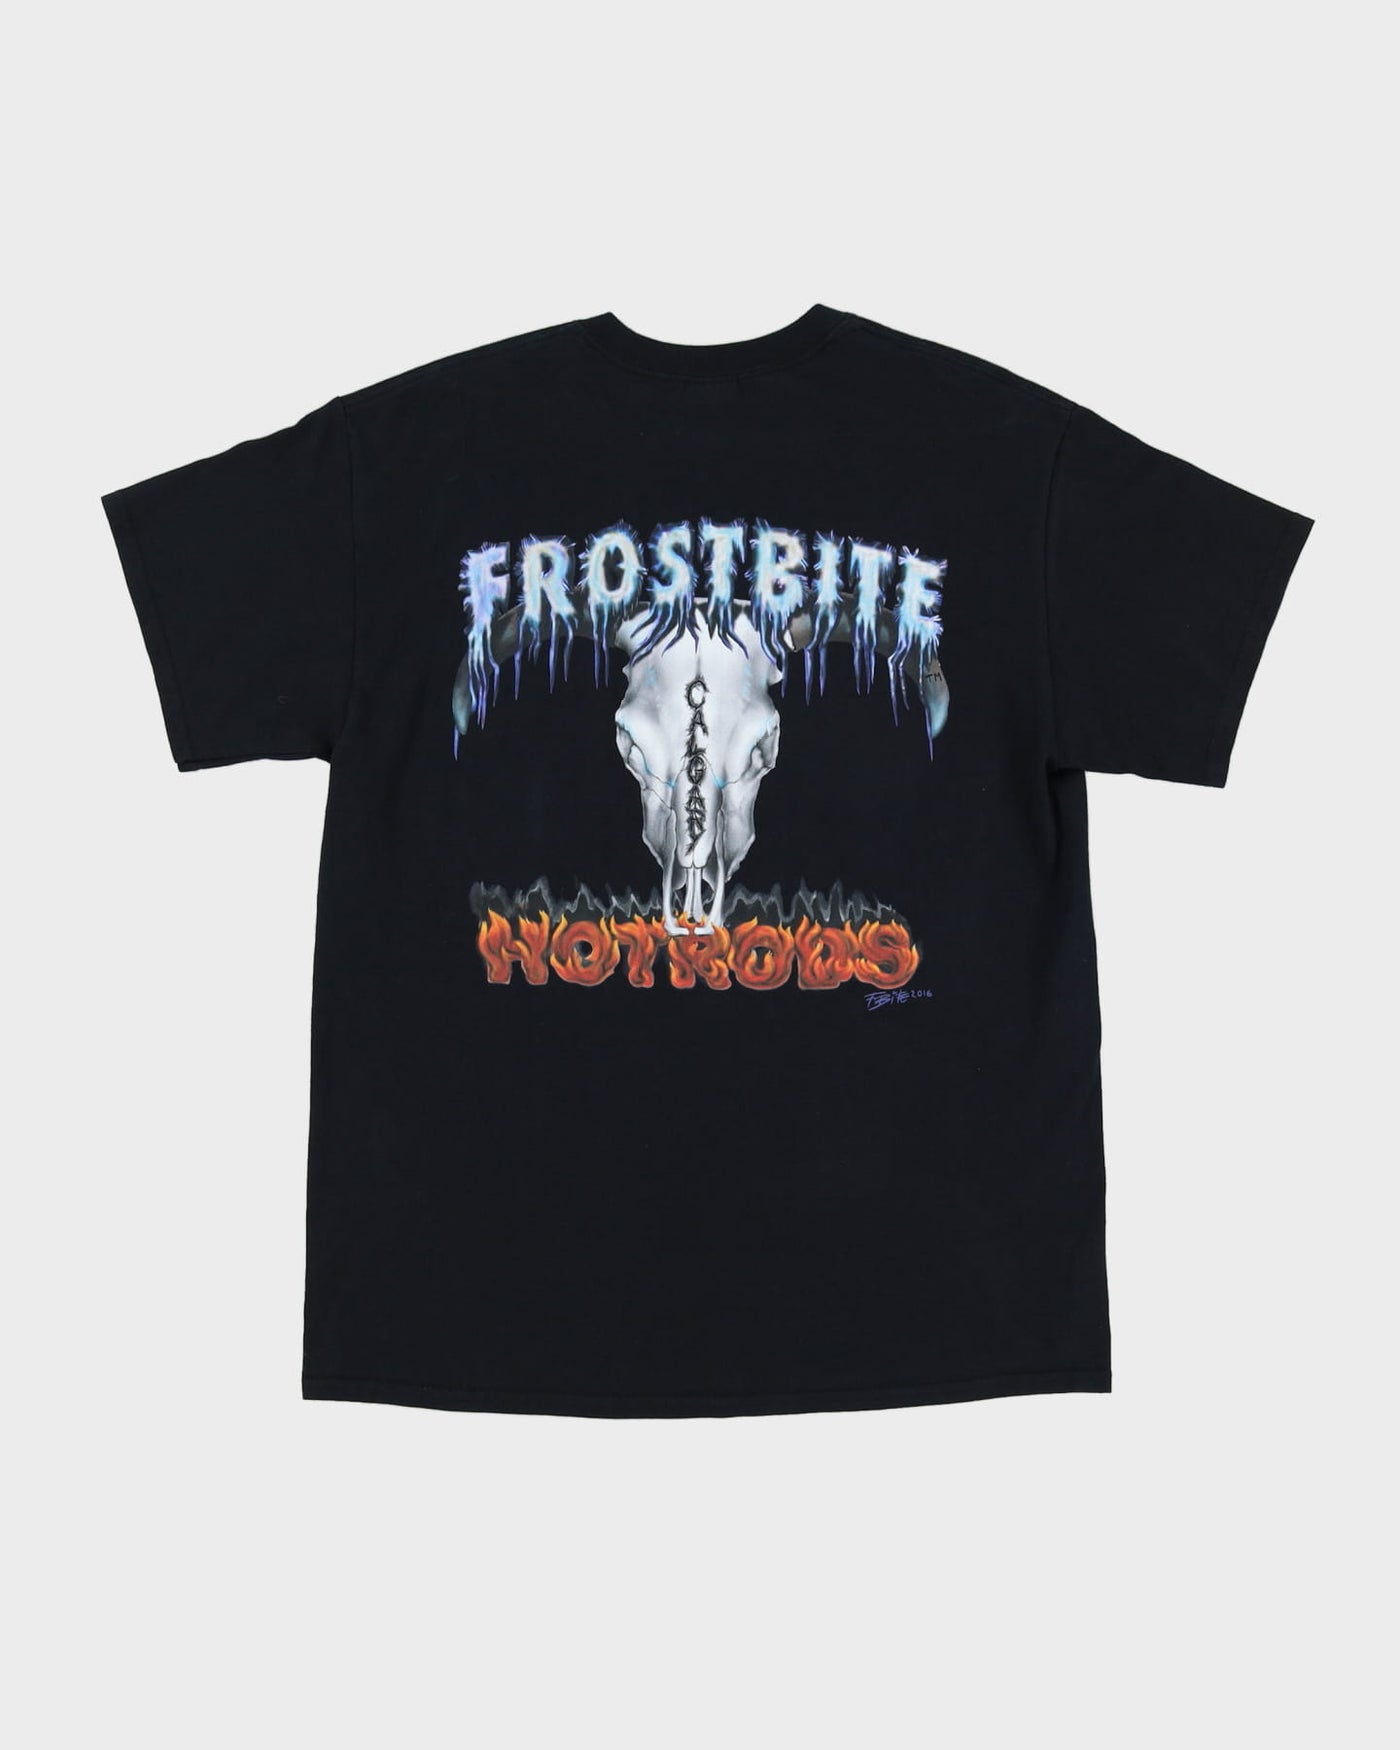 00s Frostbite Hotrods Black Graphic T-Shirt - L